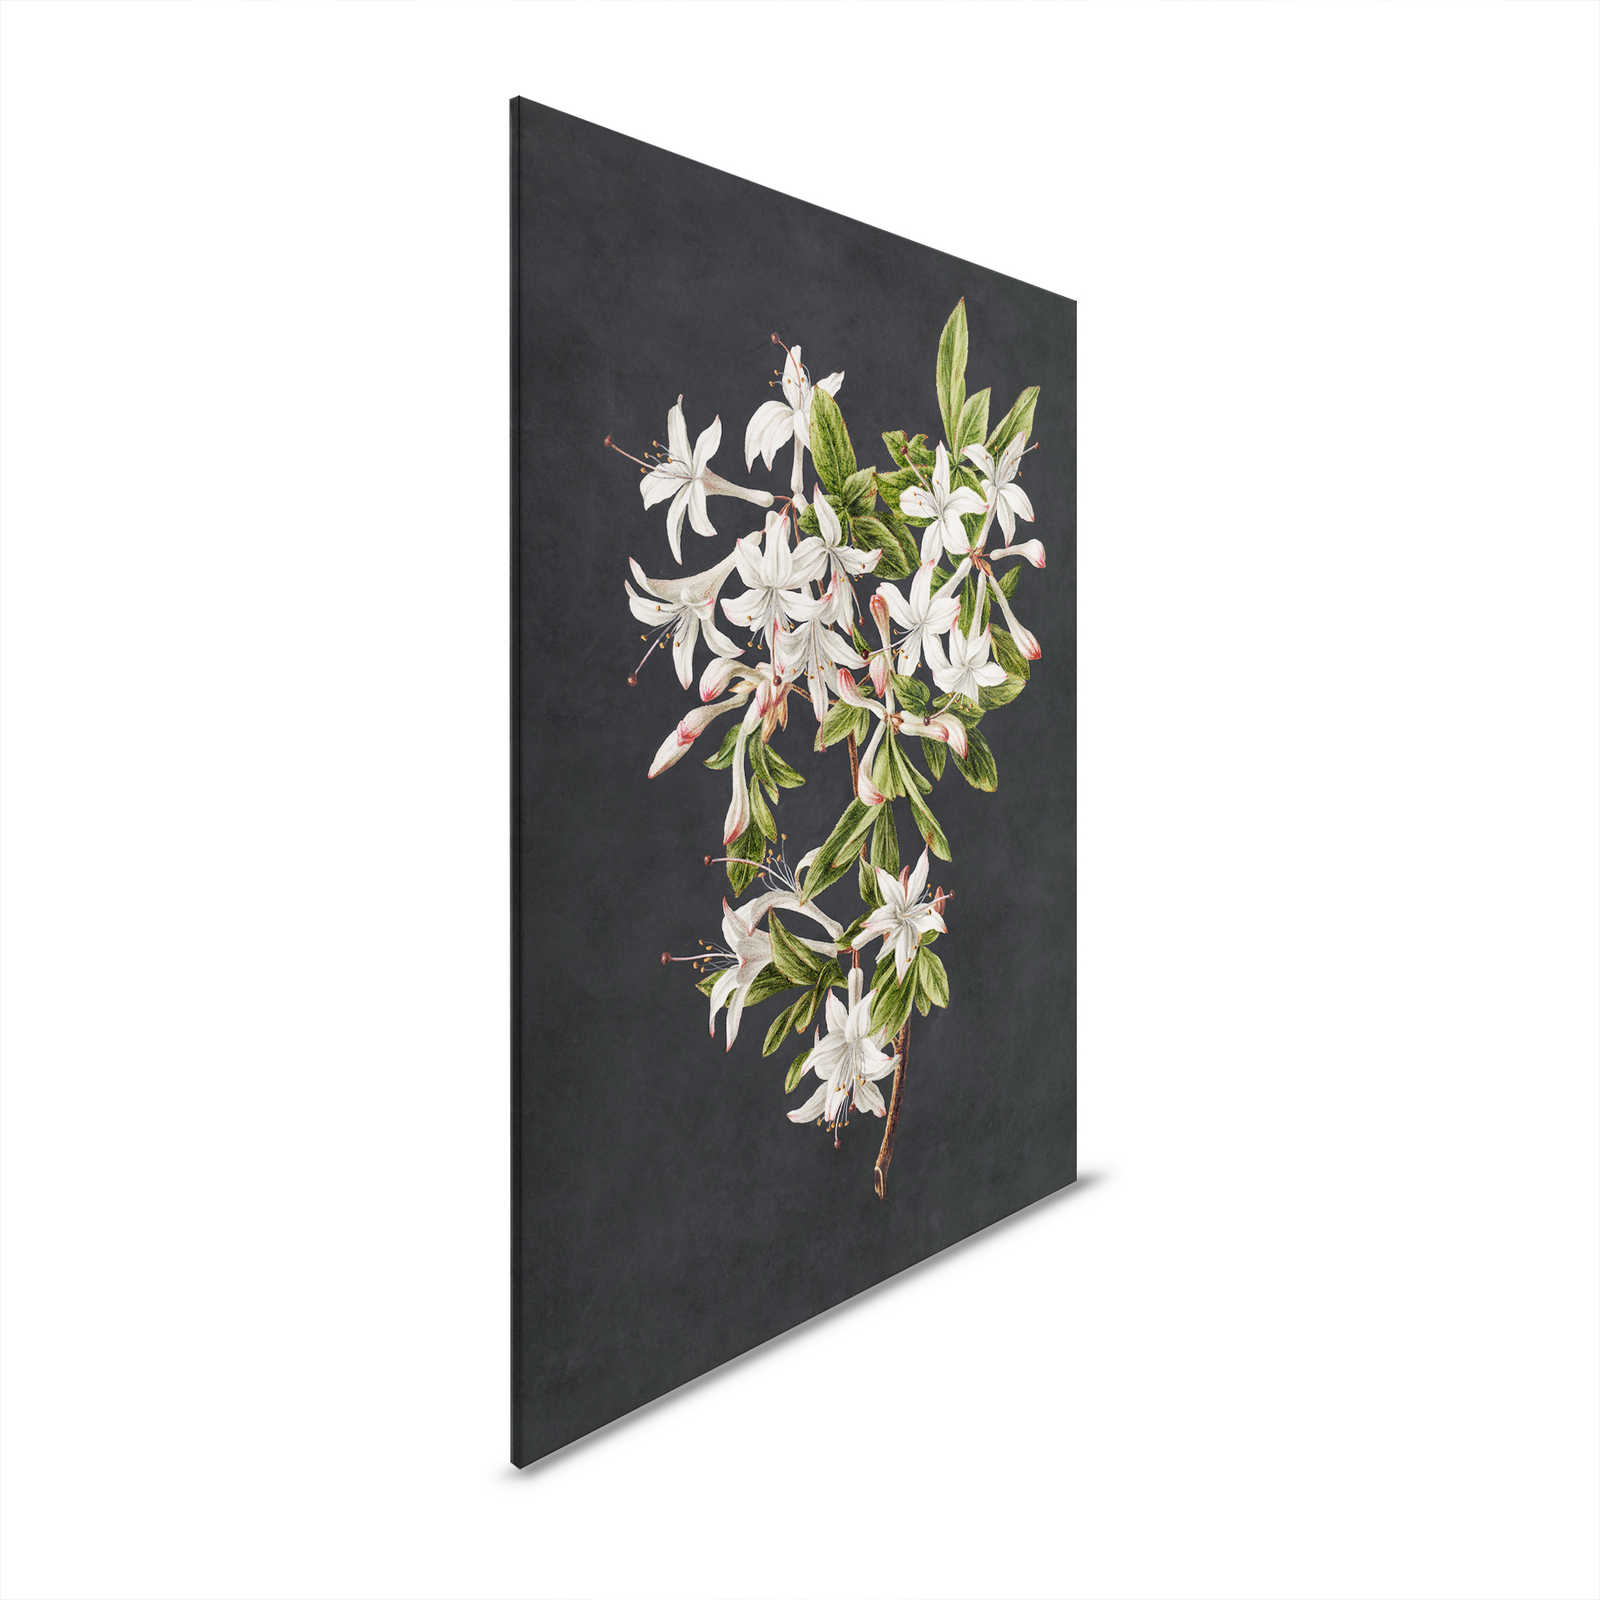 Midnight Garden 2 - Toile noire branche fleurie fleurs blanches - 0,80 m x 1,20 m
